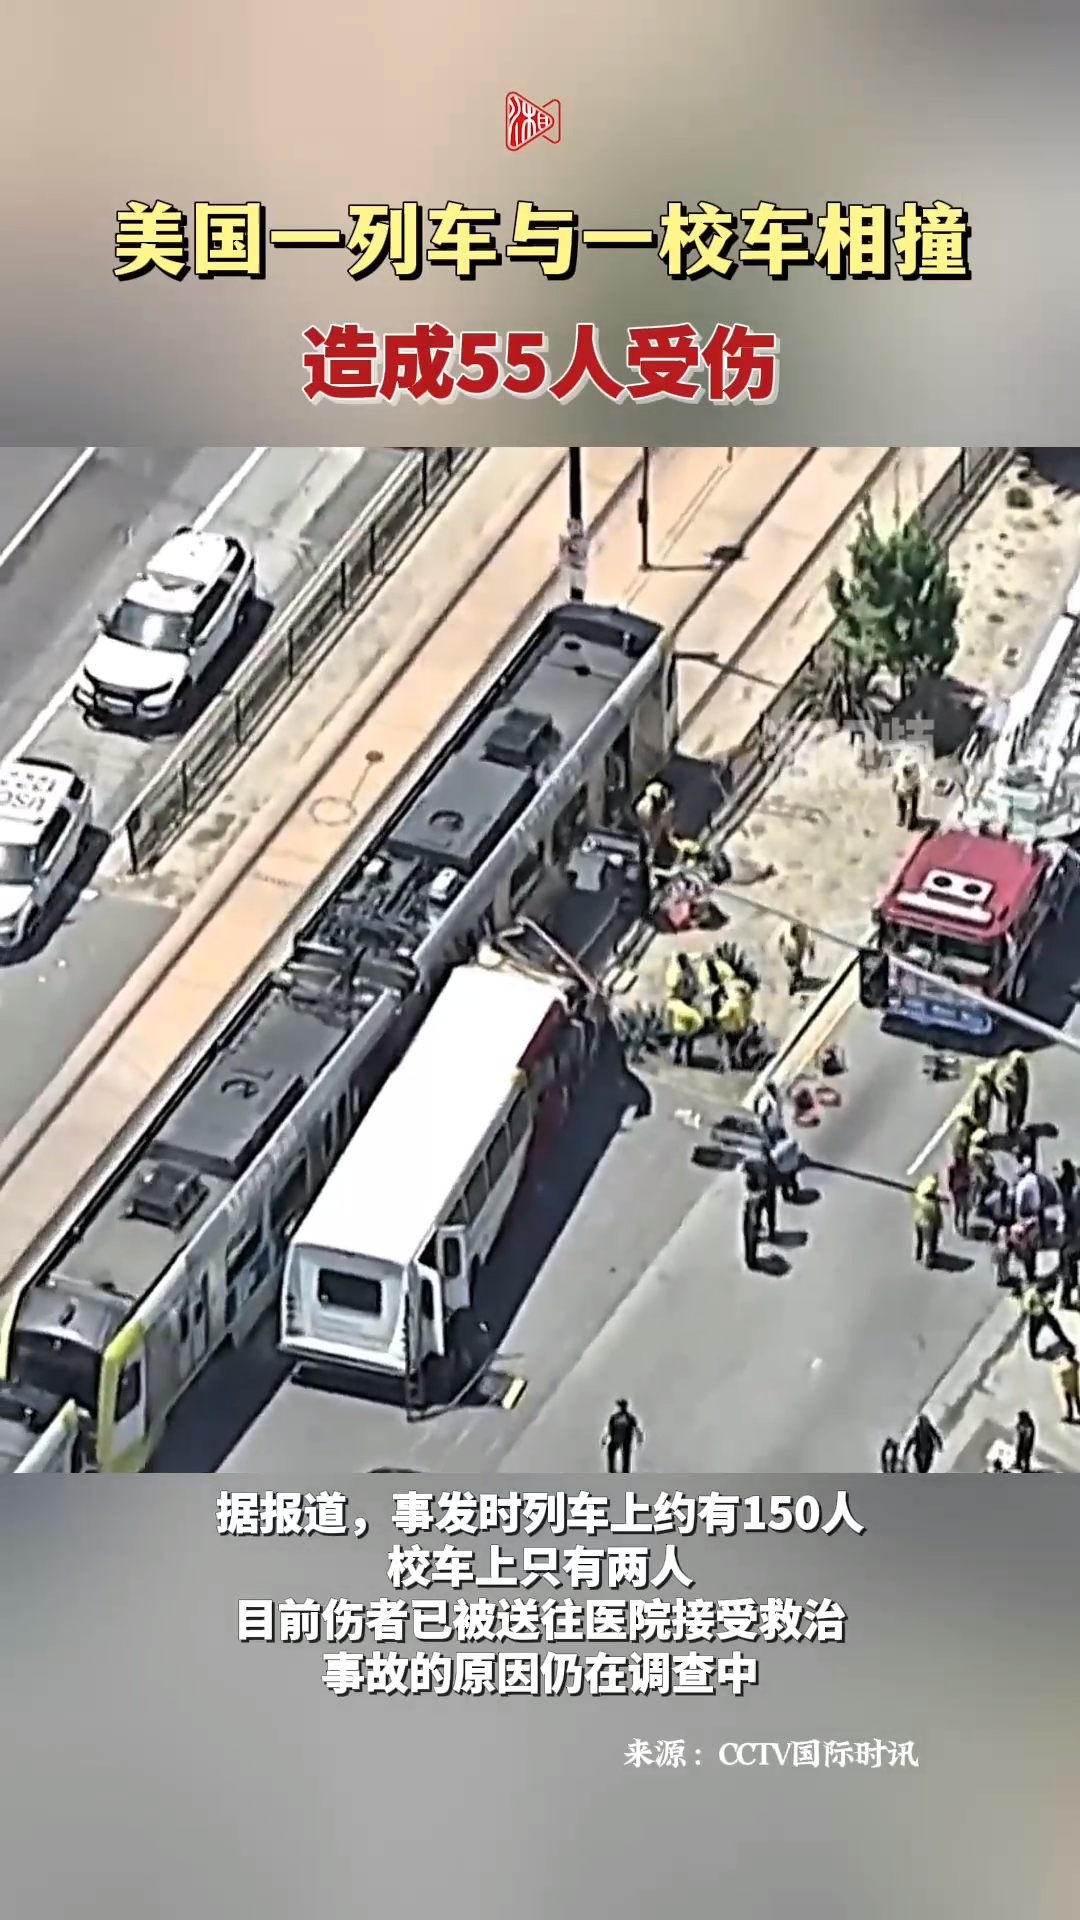 美国洛杉矶一列车与一大学校车相撞致55人受伤